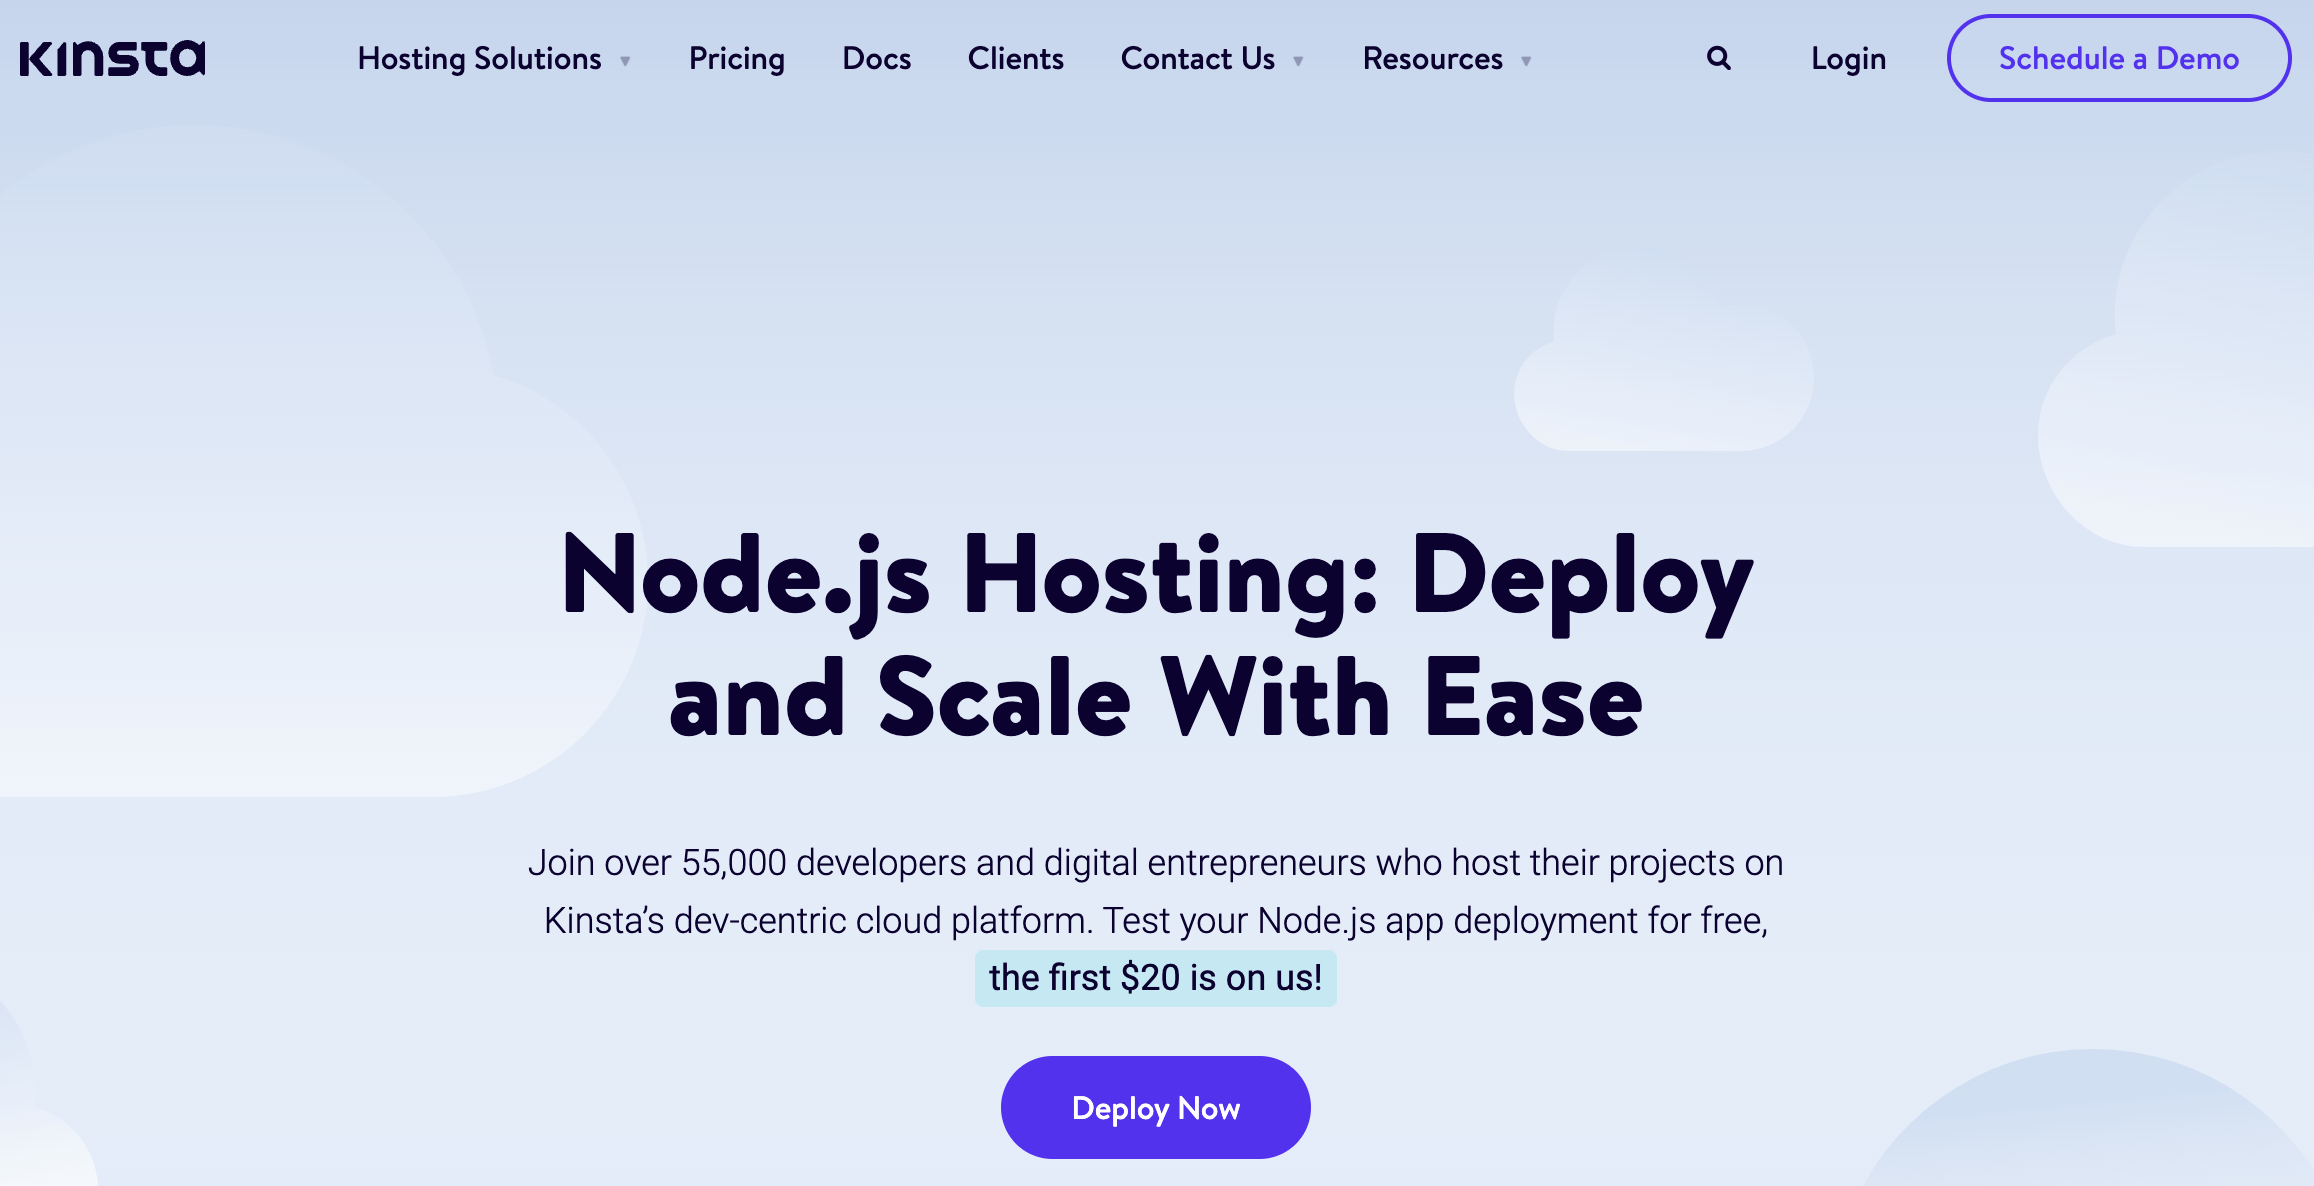 kinsta-node.js-hosting